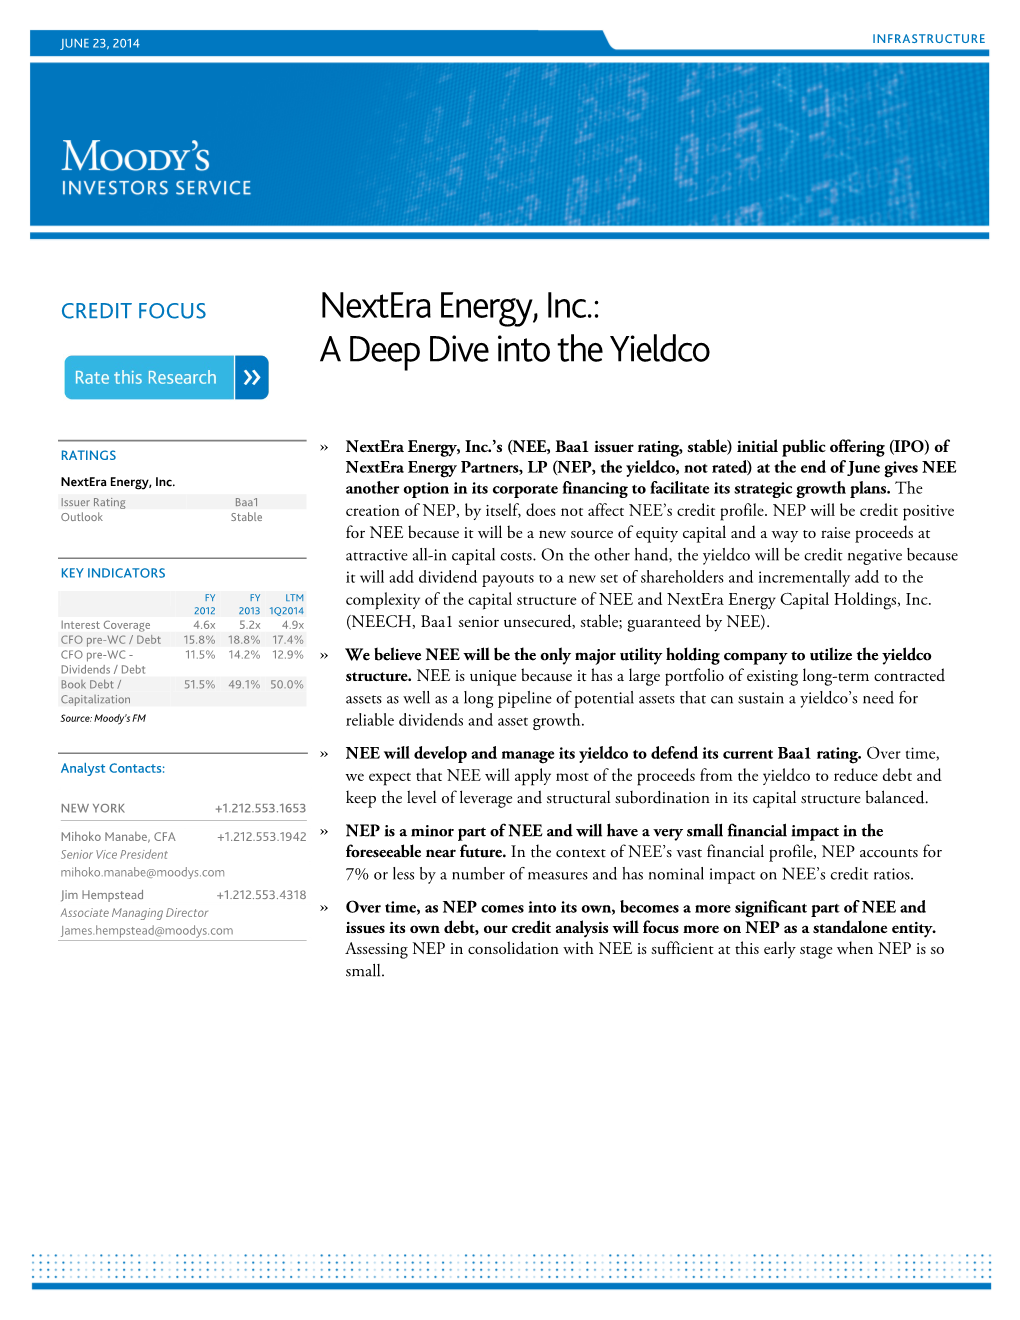 Nextera Energy, Inc.: a Deep Dive Into the Yieldco